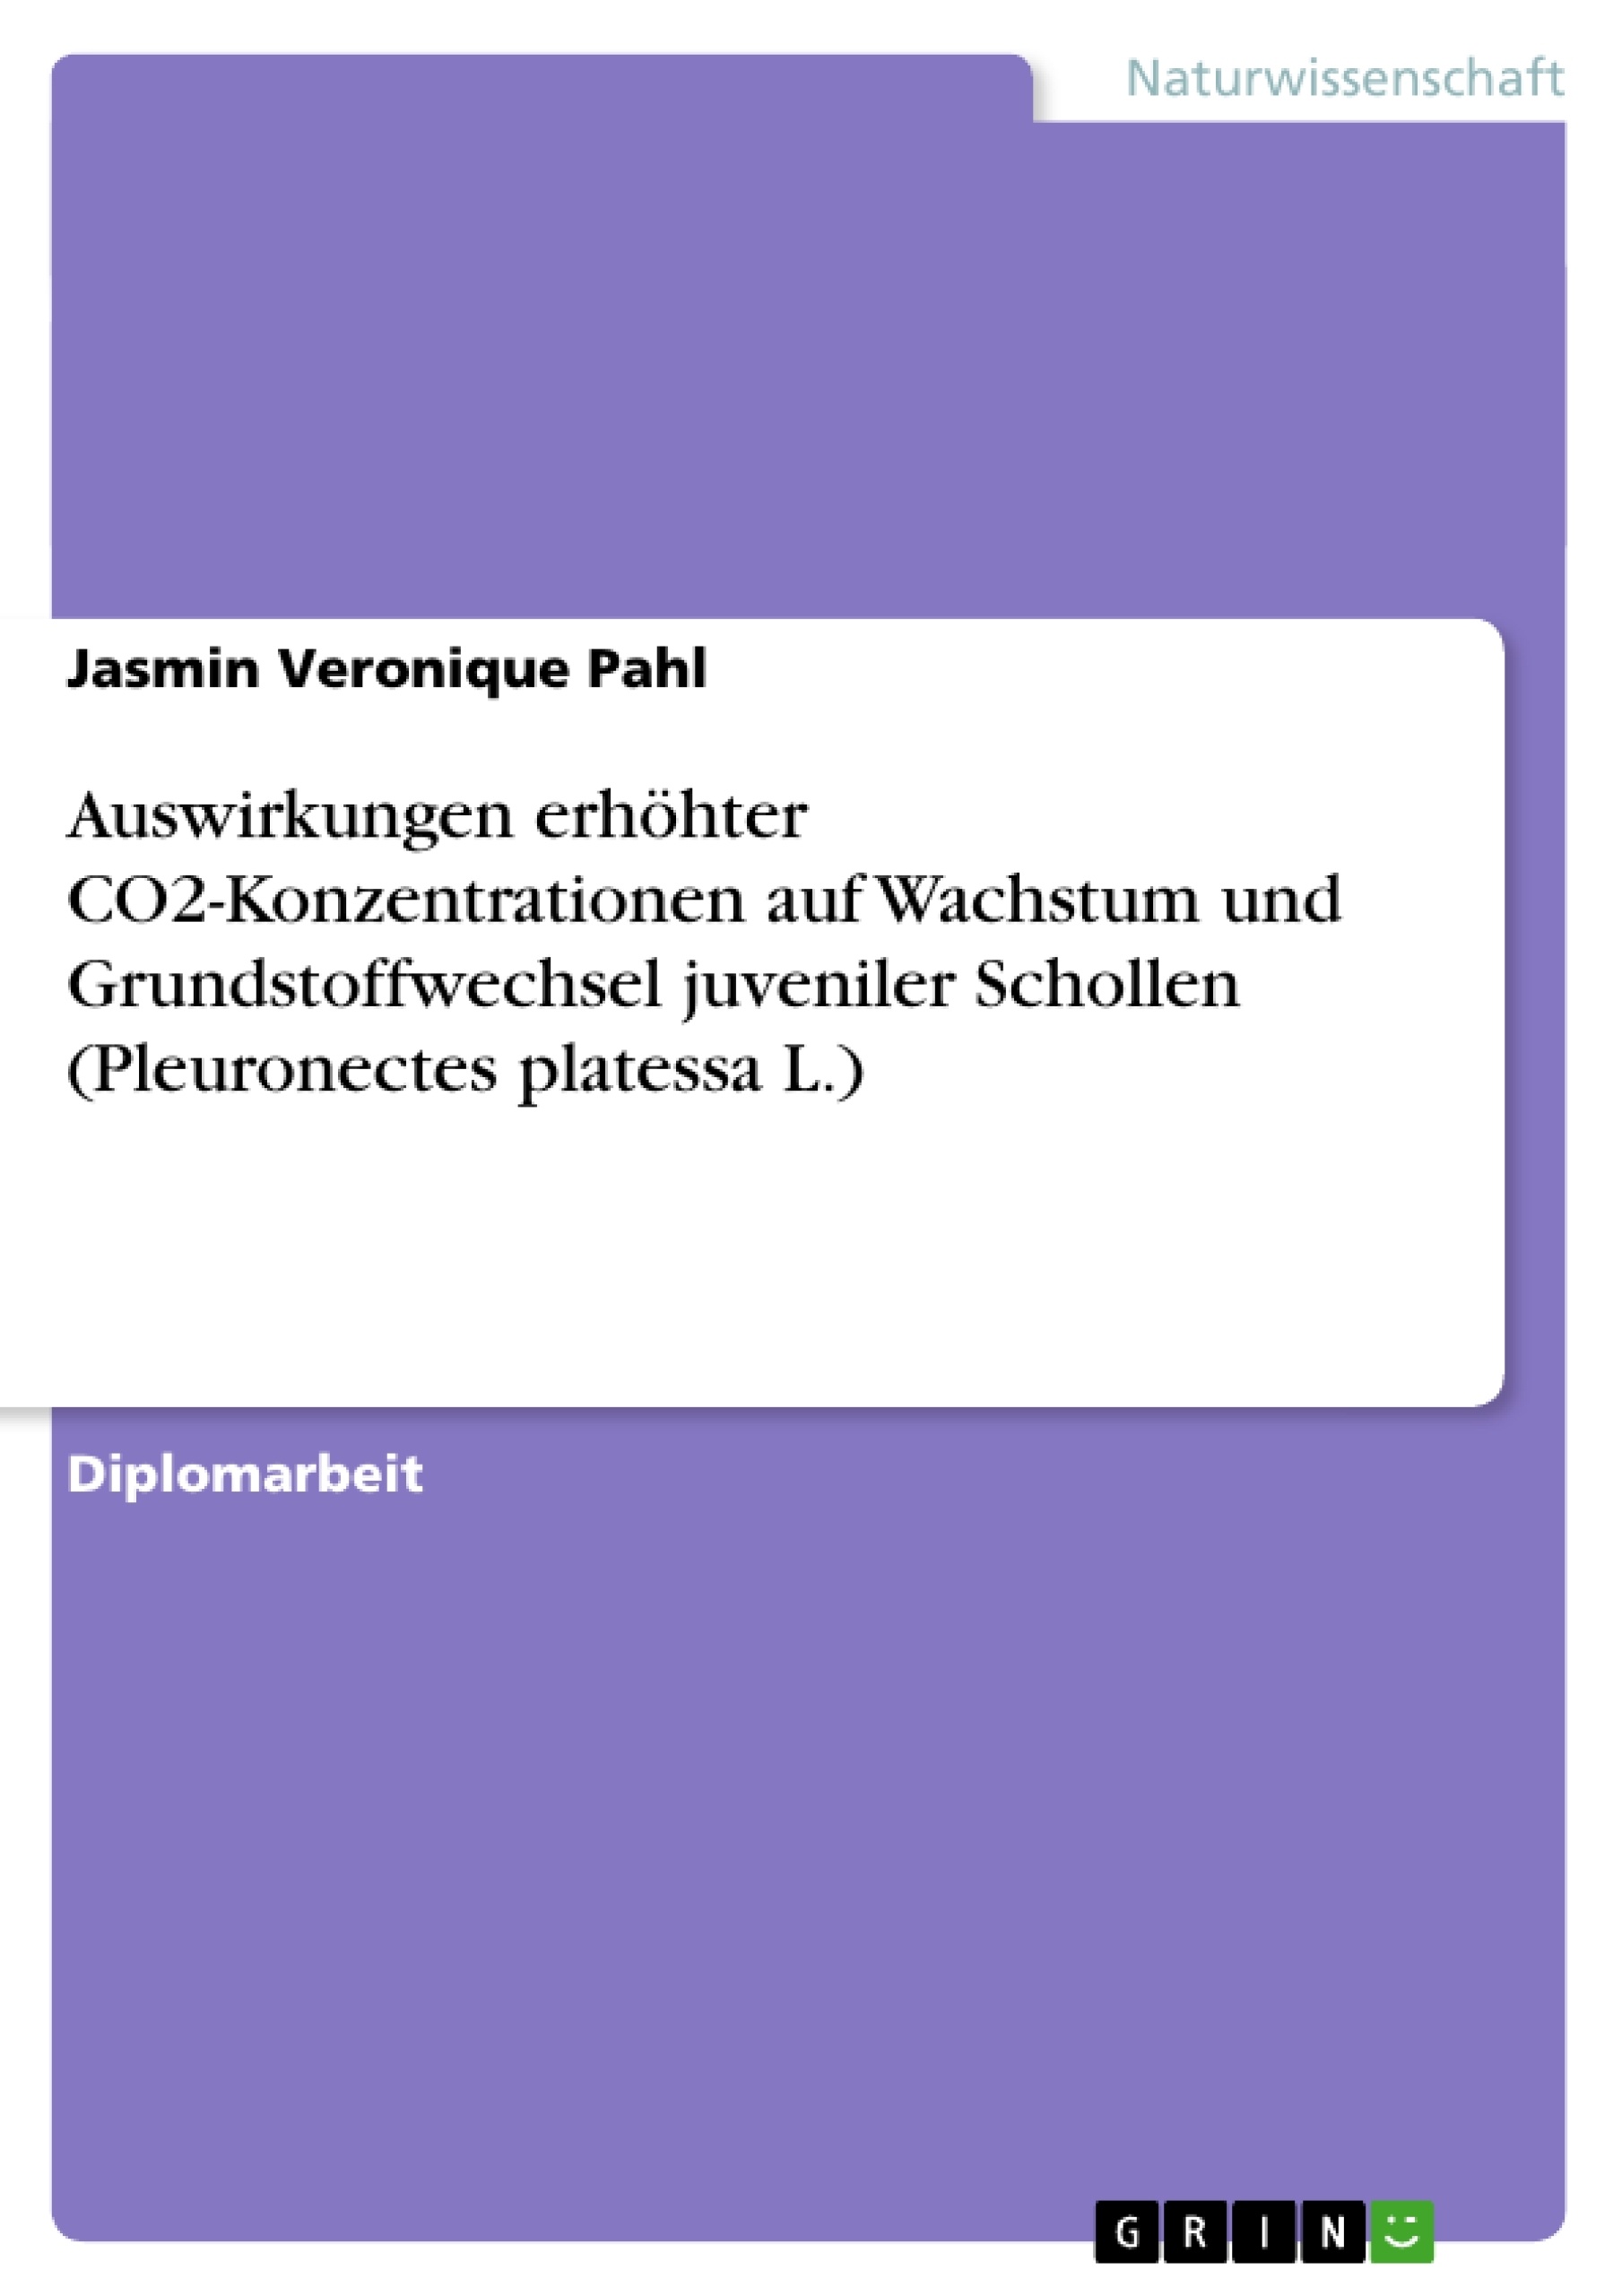 Titre: Auswirkungen erhöhter CO2-Konzentrationen auf Wachstum und Grundstoffwechsel juveniler Schollen (Pleuronectes platessa L.)